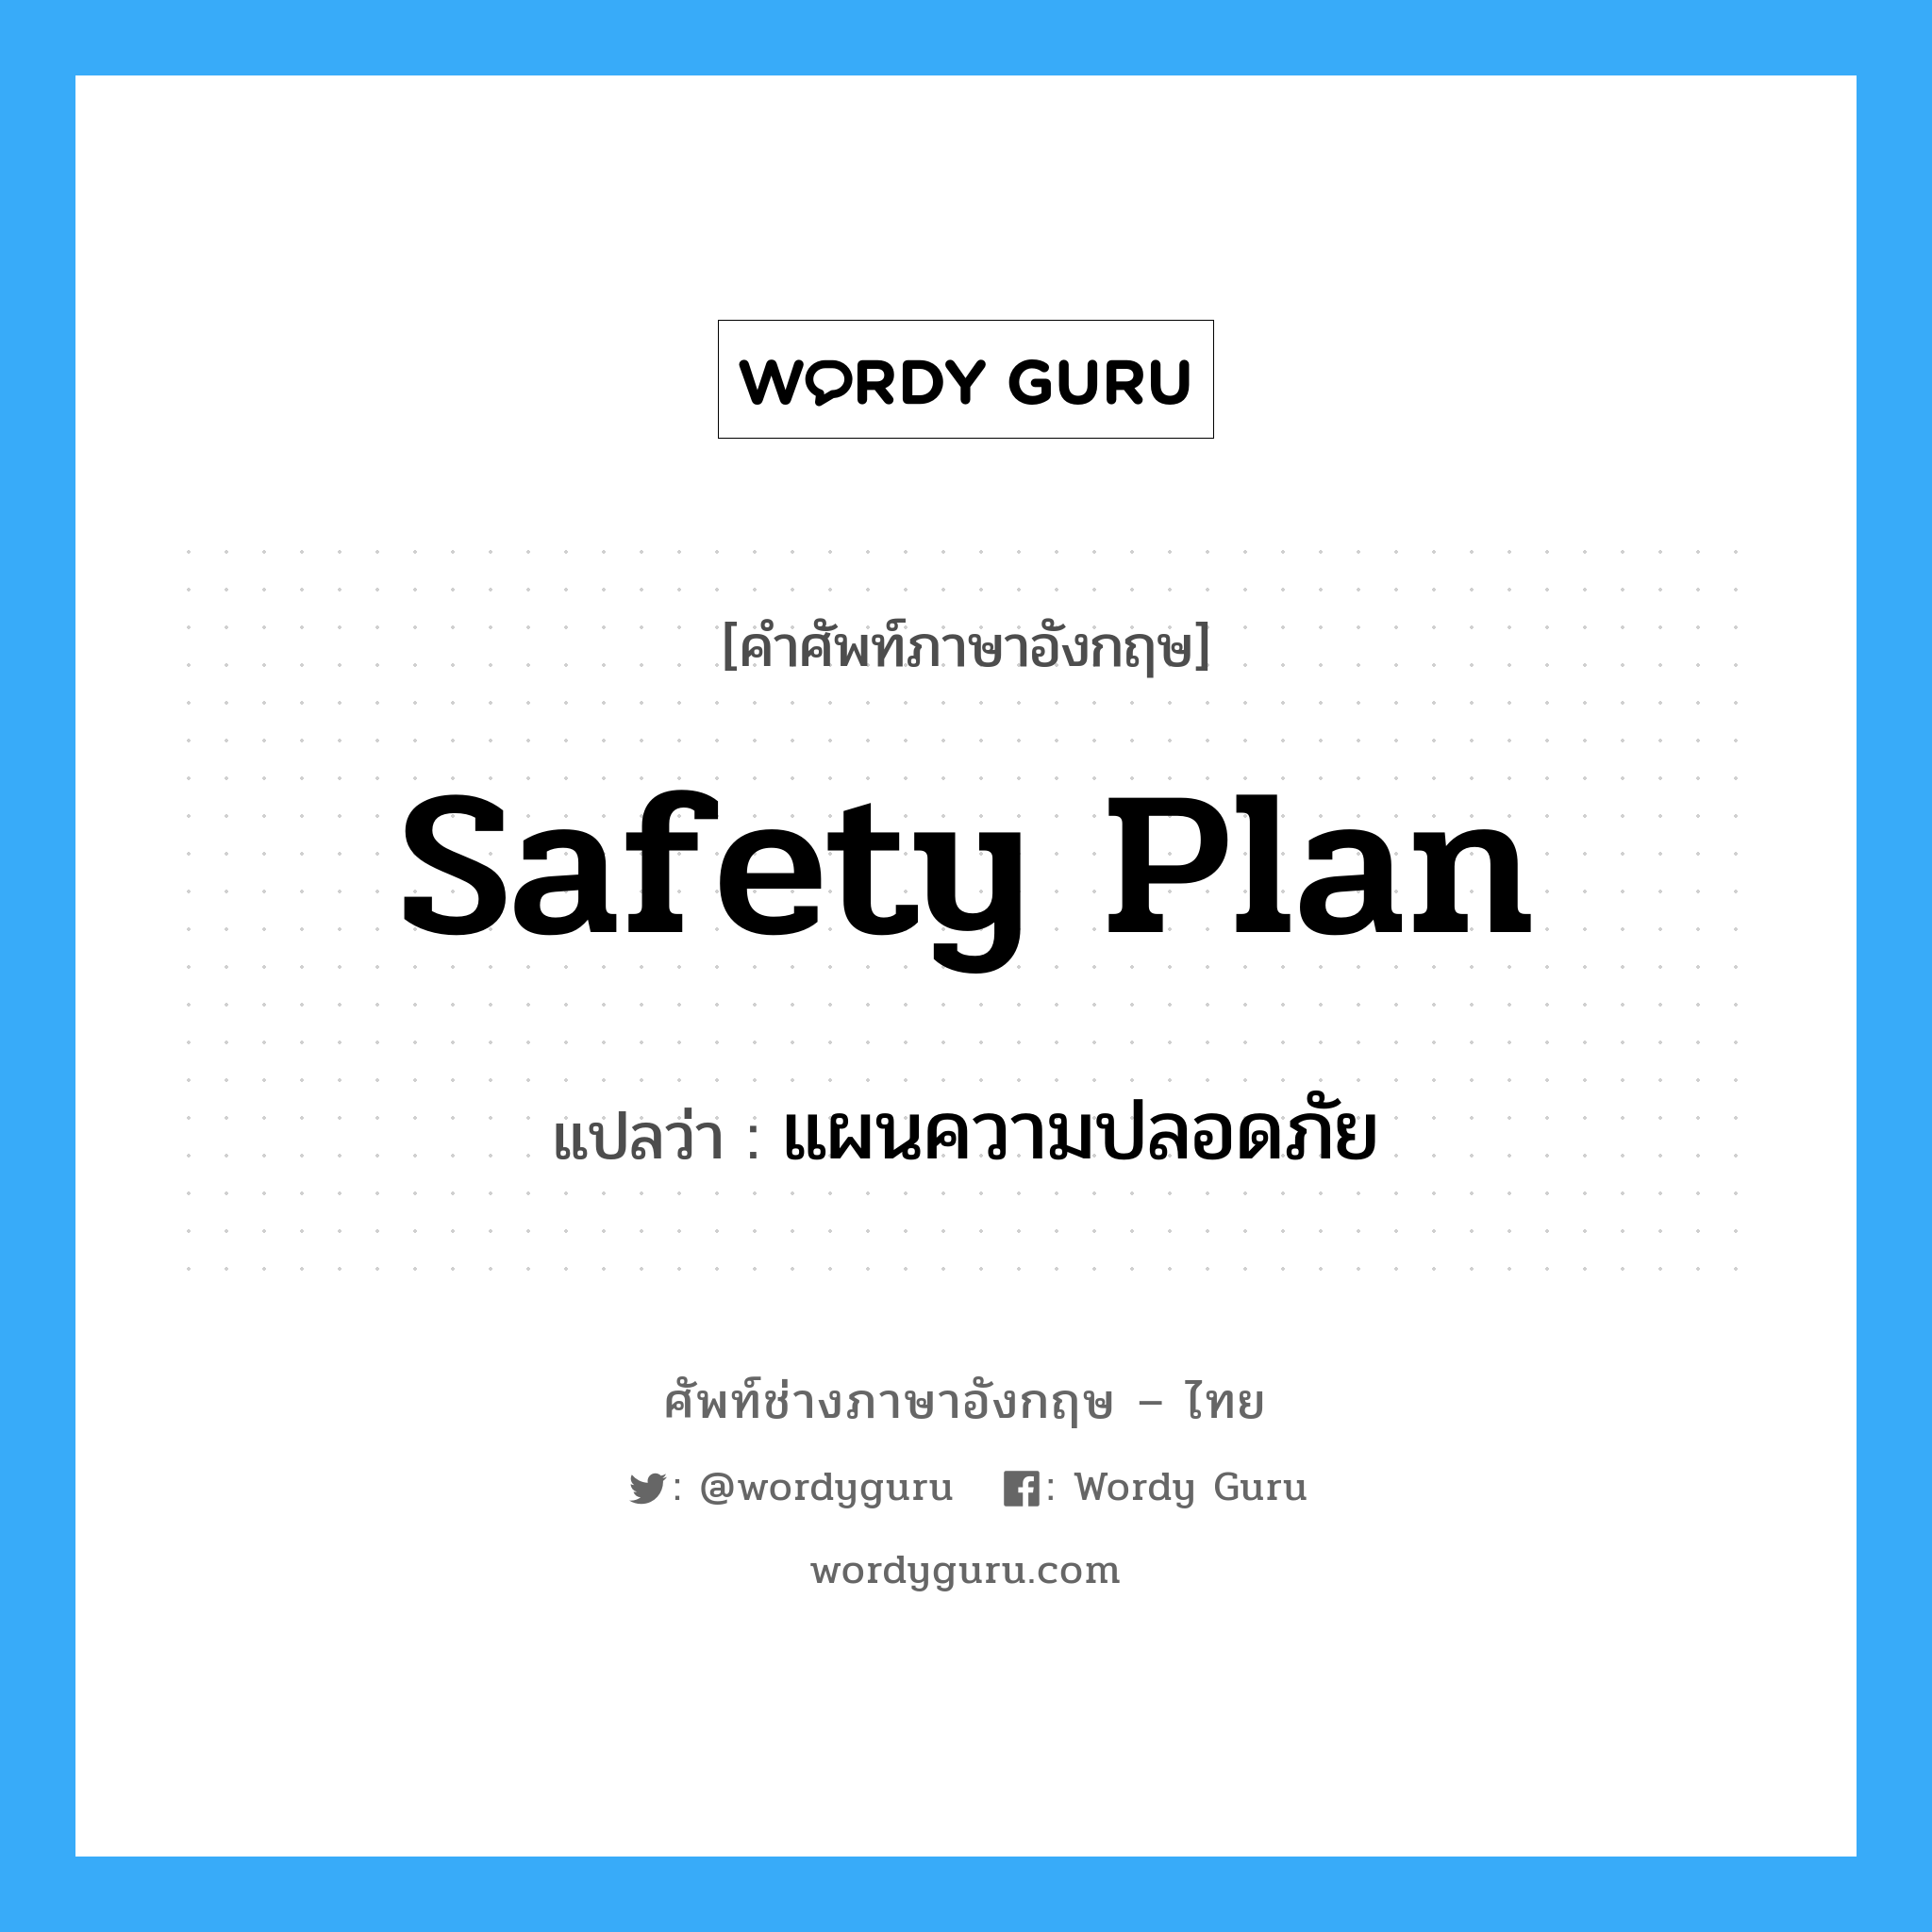 แผนความปลอดภัย ภาษาอังกฤษ?, คำศัพท์ช่างภาษาอังกฤษ - ไทย แผนความปลอดภัย คำศัพท์ภาษาอังกฤษ แผนความปลอดภัย แปลว่า Safety Plan